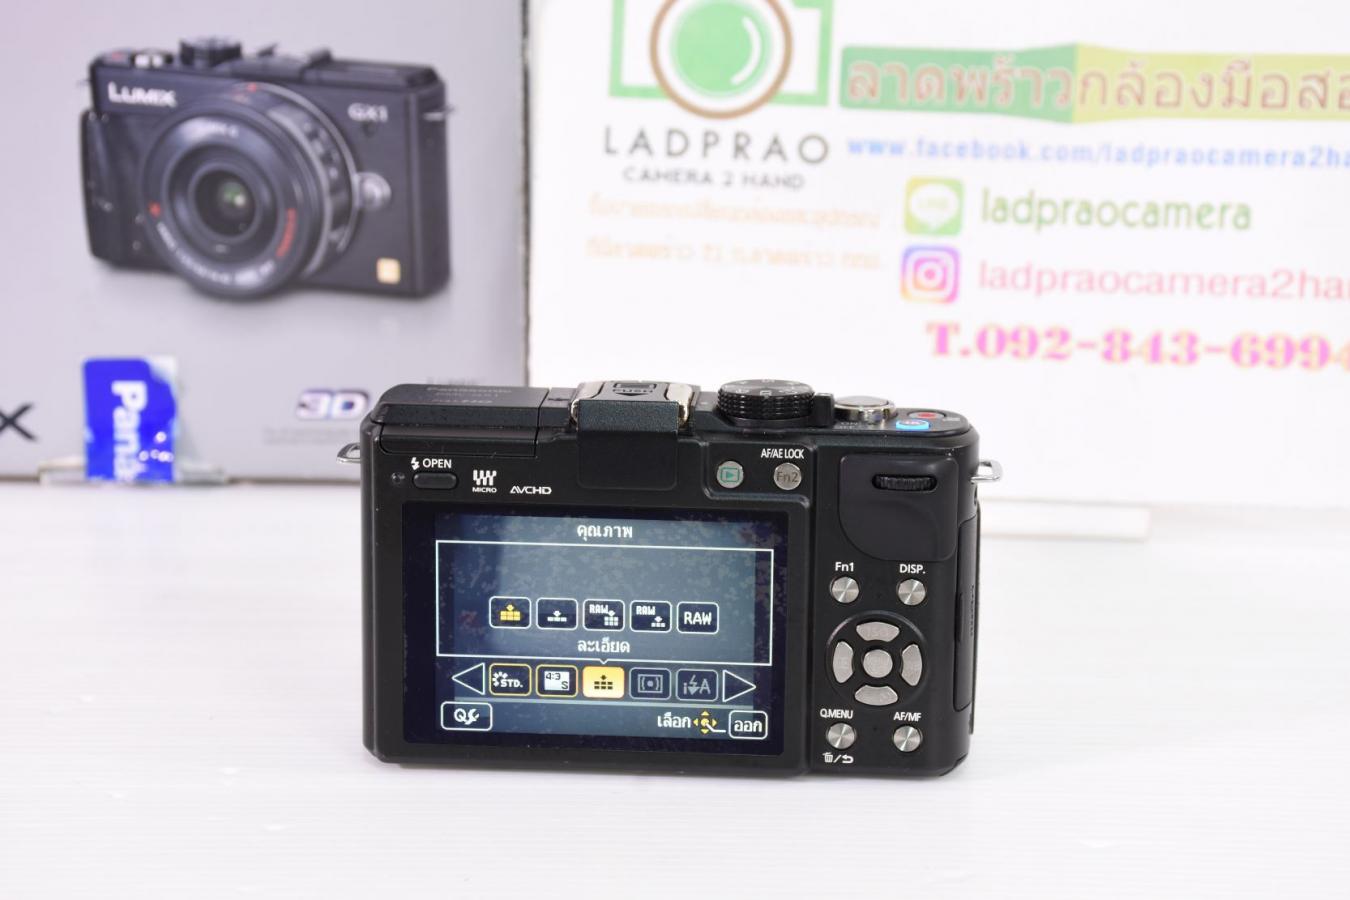 กล้อง Mirrorless Panasonic รุ่น DMC-GX1X สีดำ